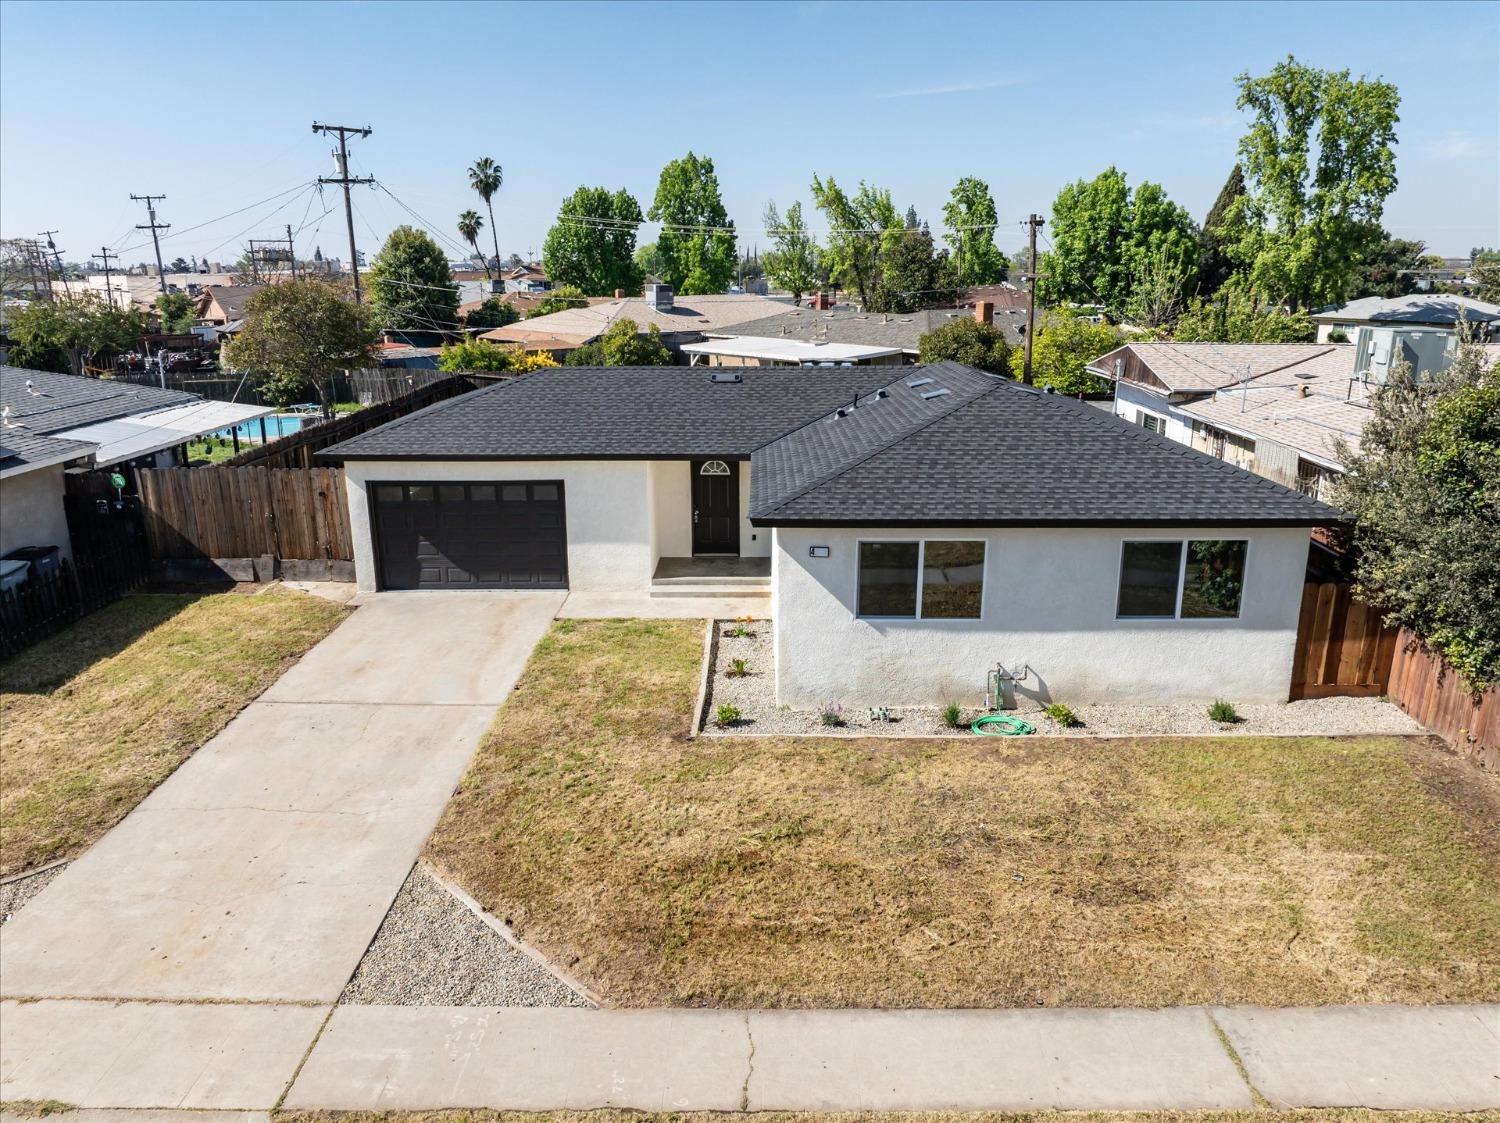 View Fresno, CA 93727 house